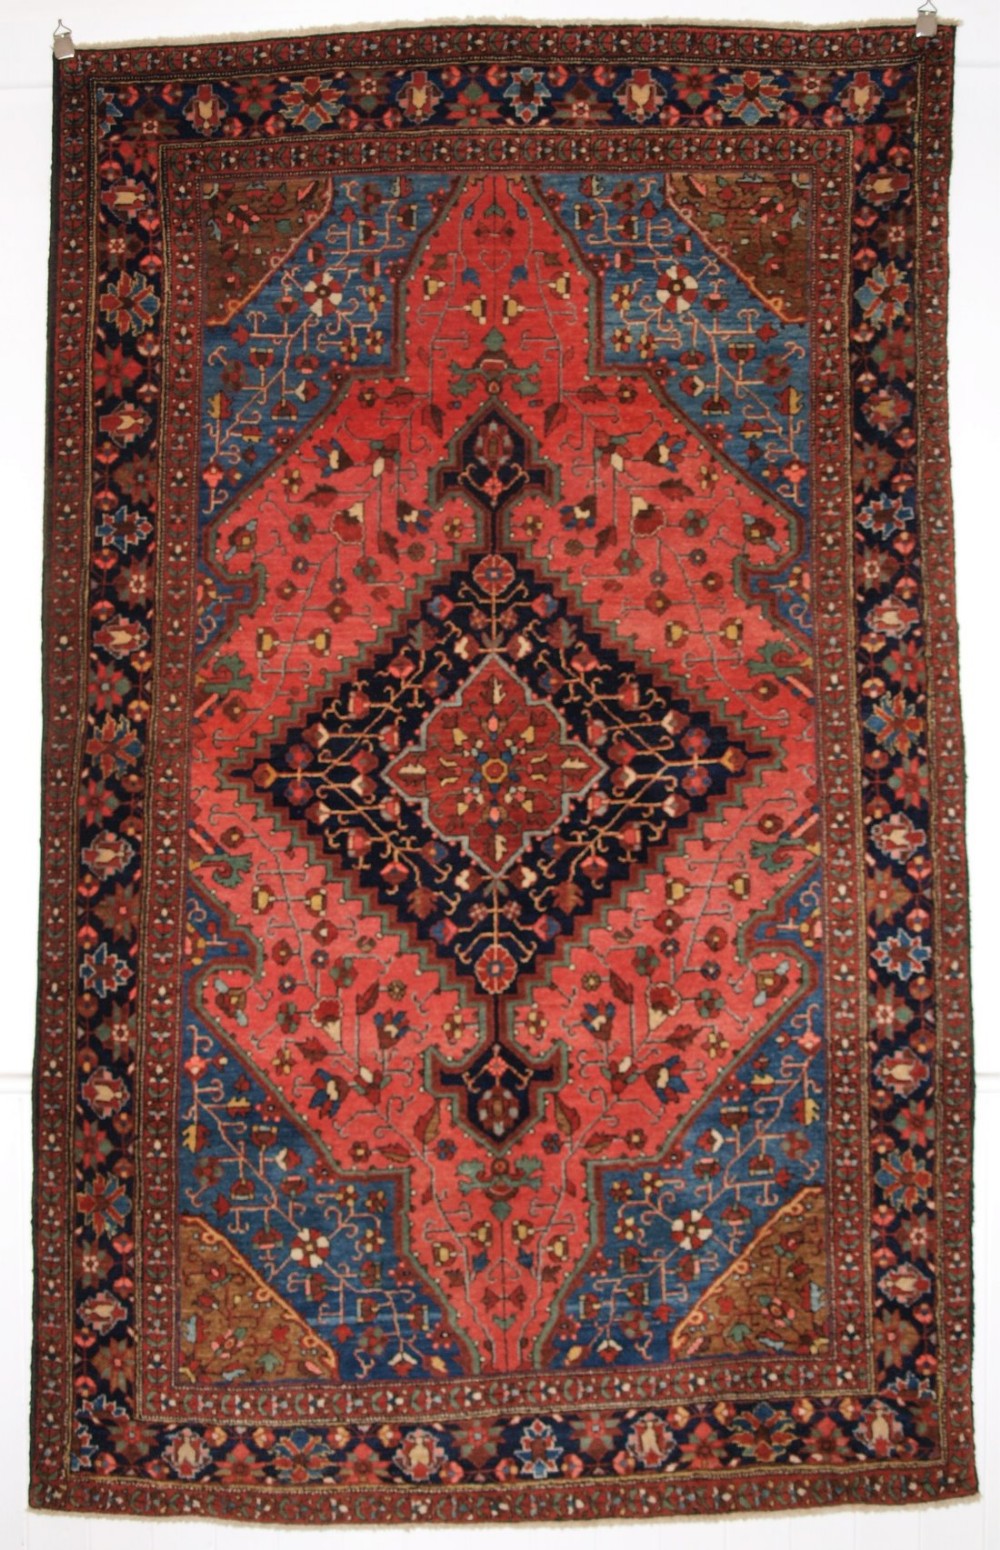 antique persian sarouk rug superb design and colour full pile circa 1900